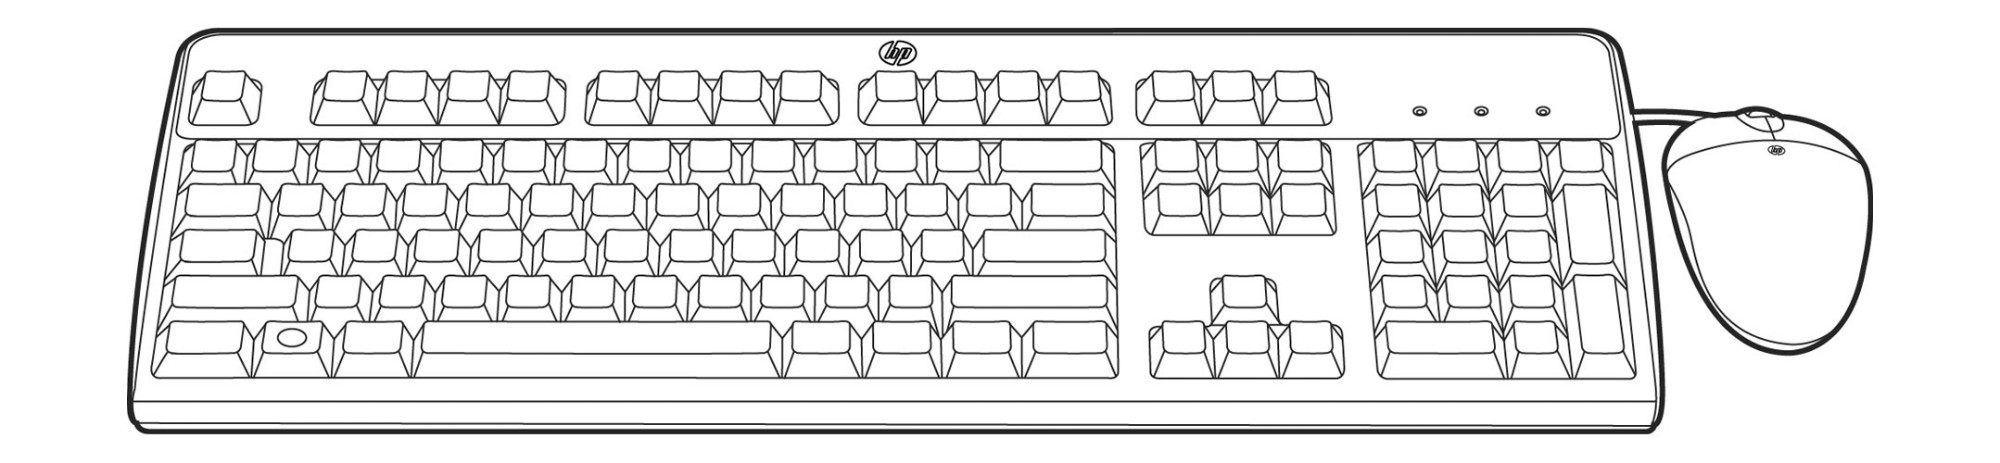 Hewlett Packard Enterprise 638214-B21 keyboard Mouse included USB Russian Black